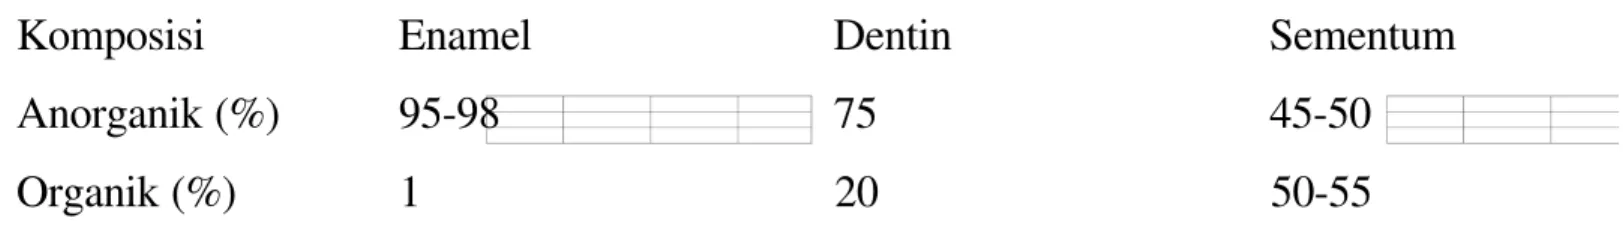 Tabel 1 Perbedaan komposisi kimiawi antara enamel, dentin dan sementum.